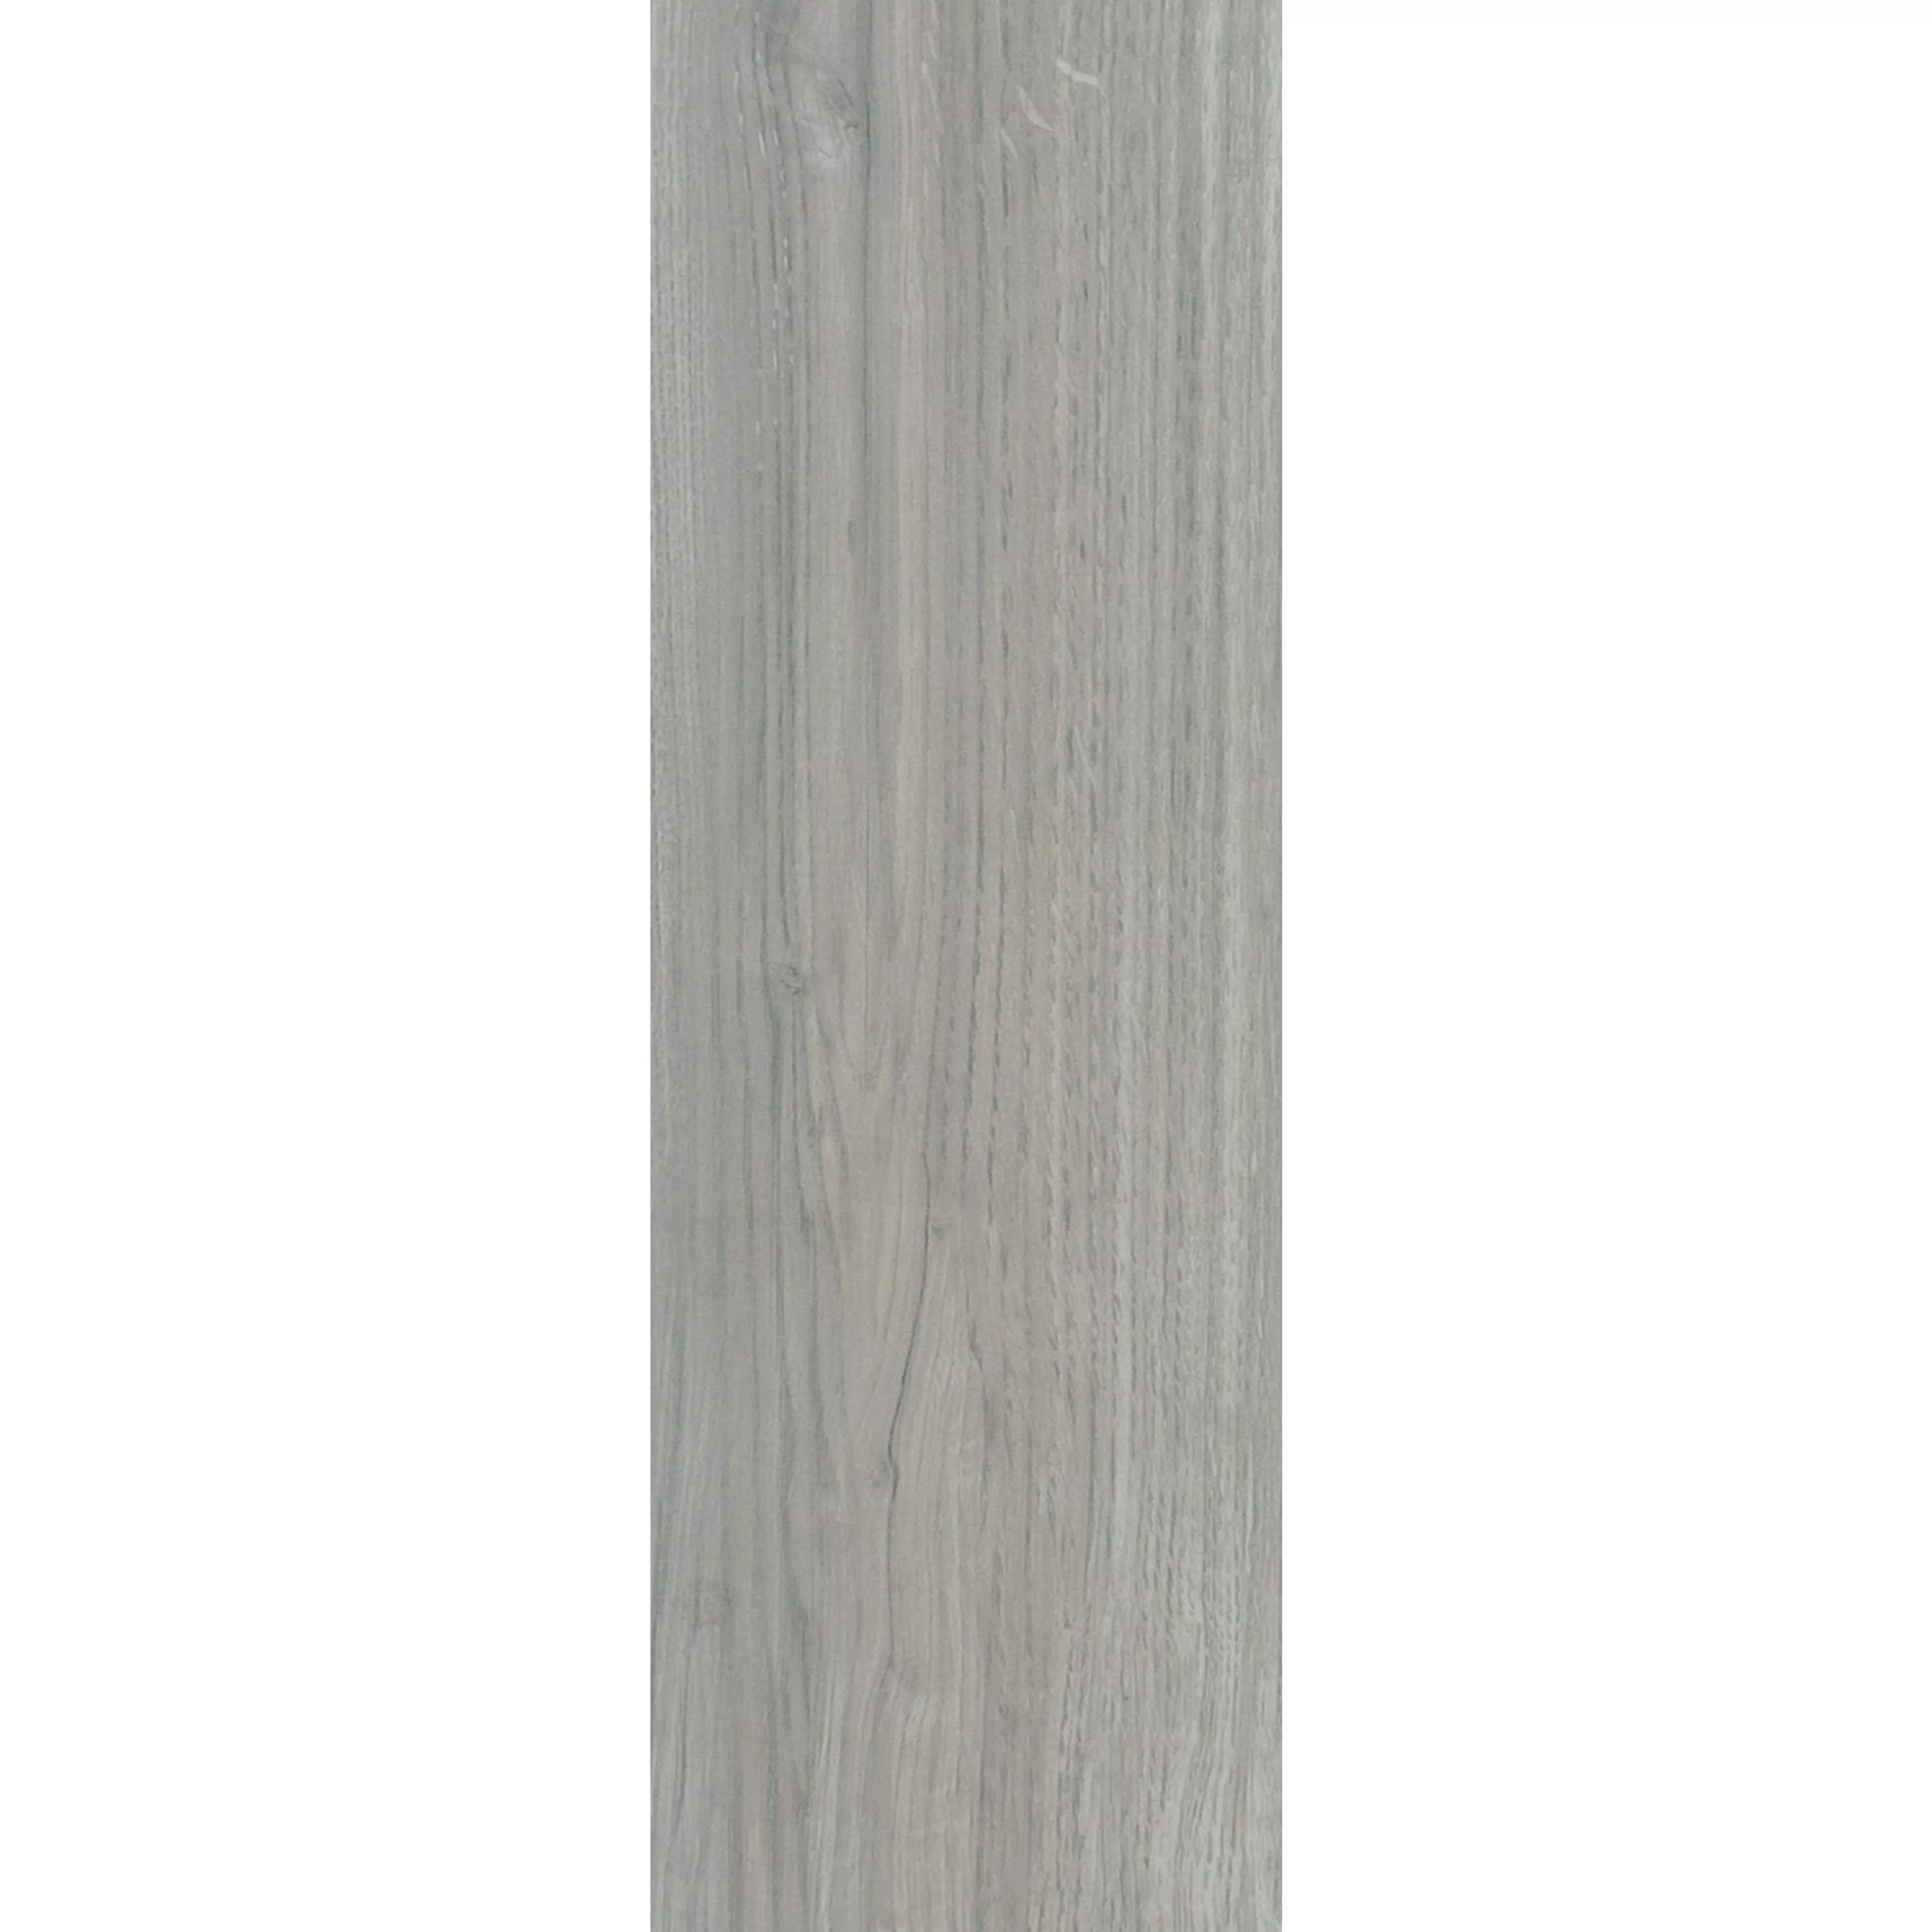 Płytki Podłogowe Wygląd Drewna Fullwood Beżowy 20x120cm 